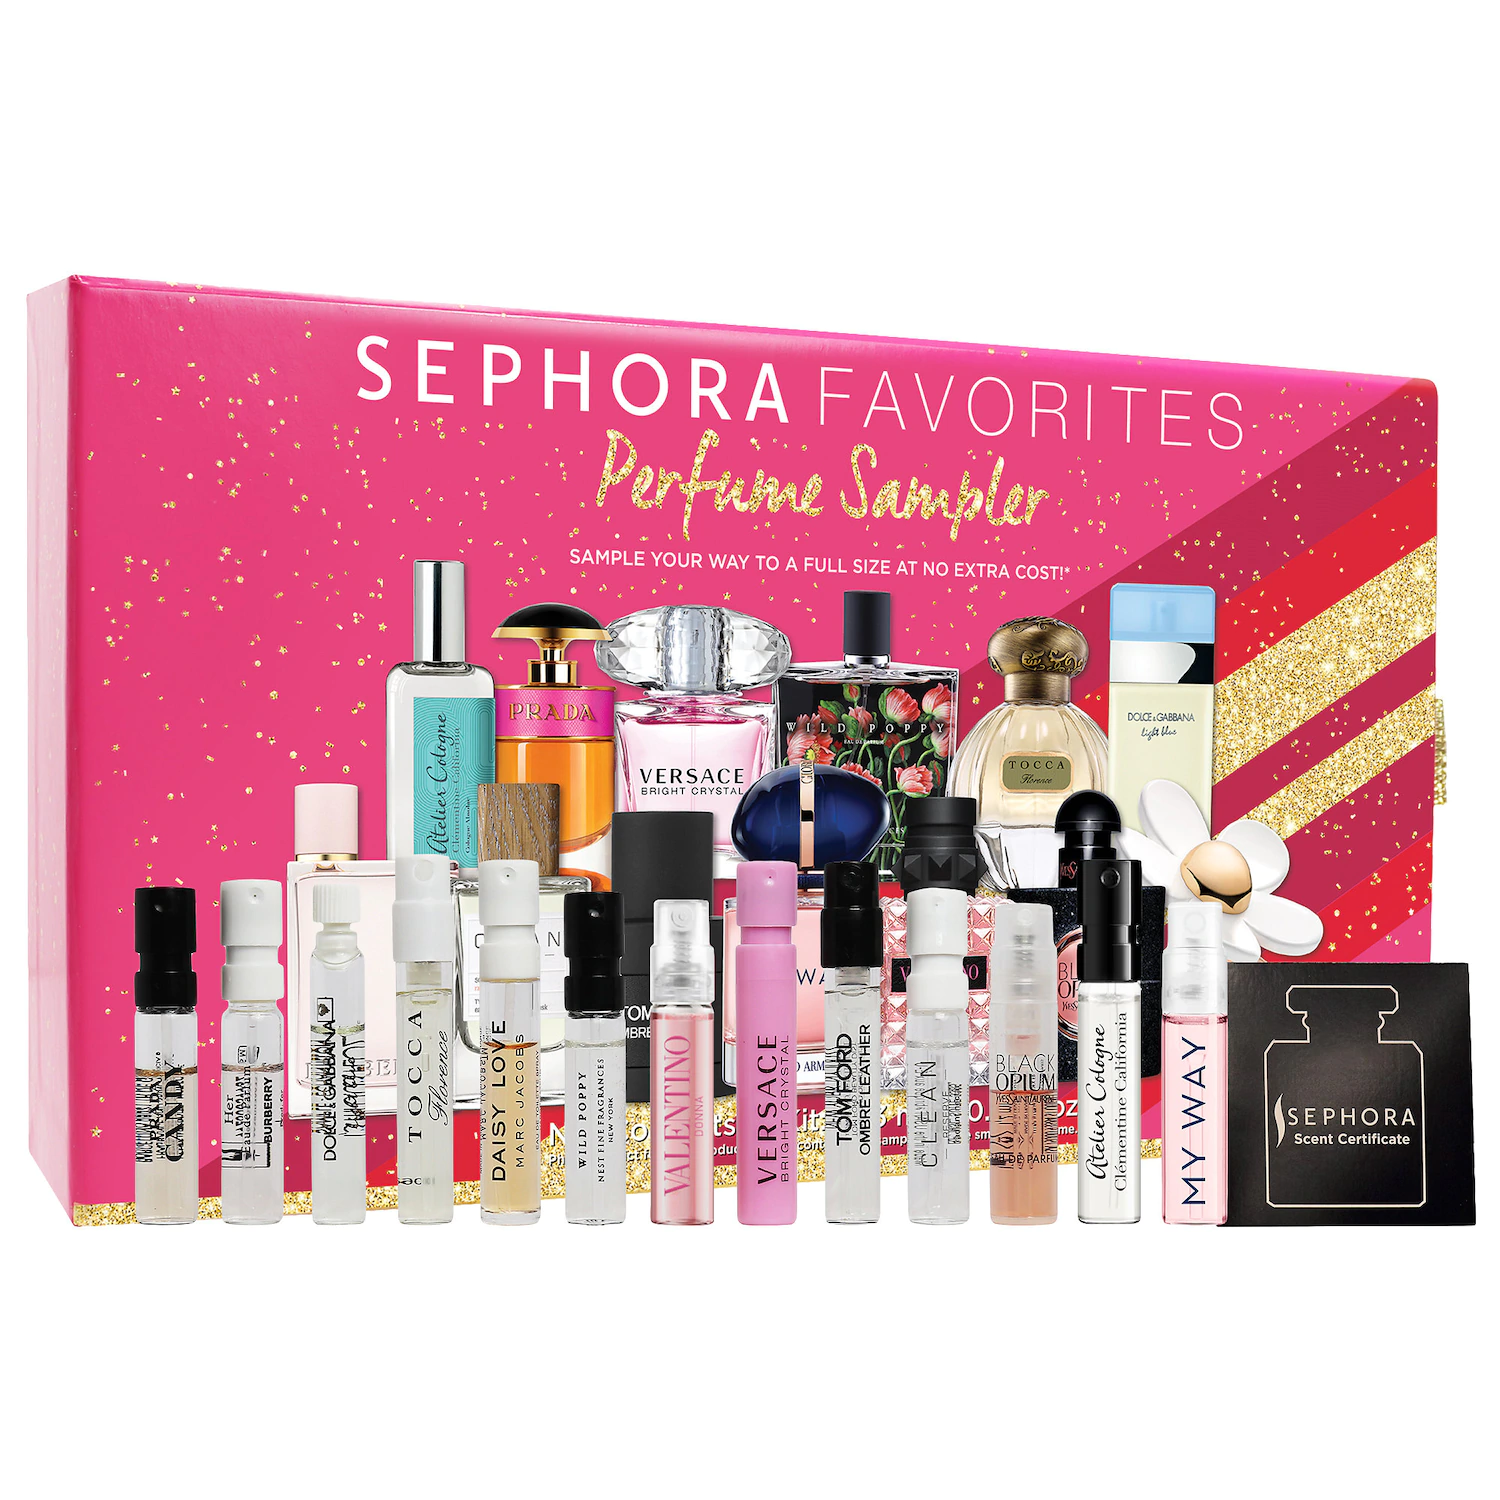 Sephora Favorites Perfume Sampler Set - Sephora Favorites